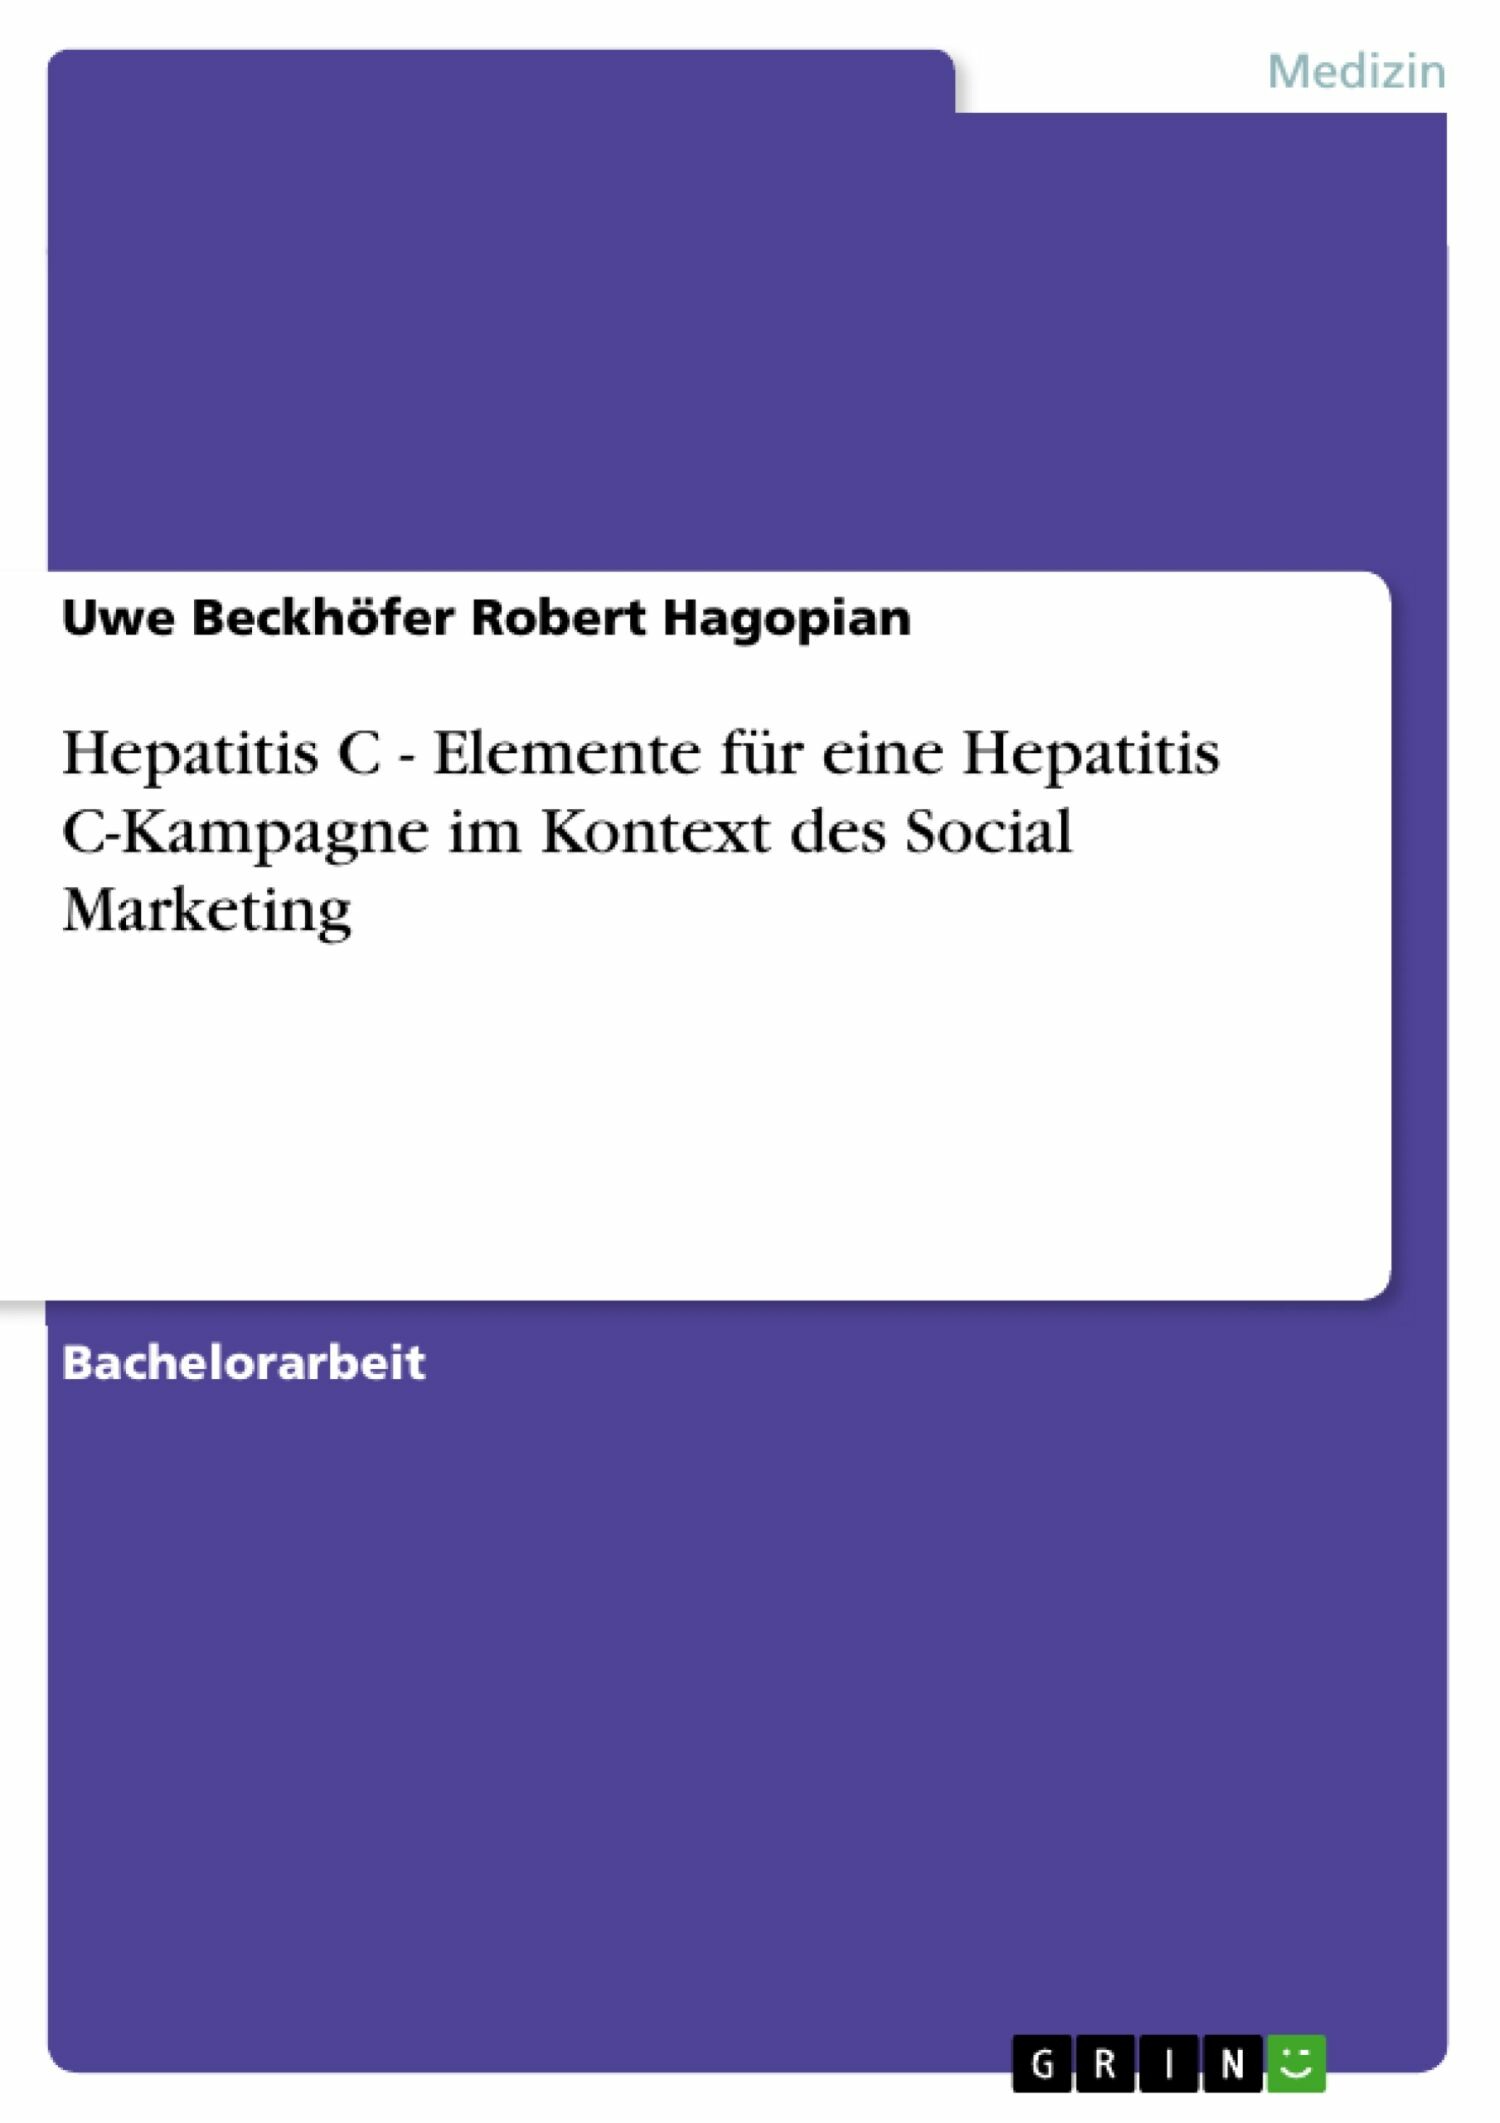 Hepatitis C - Elemente für eine Hepatitis C-Kampagne im Kontext des Social Marketing